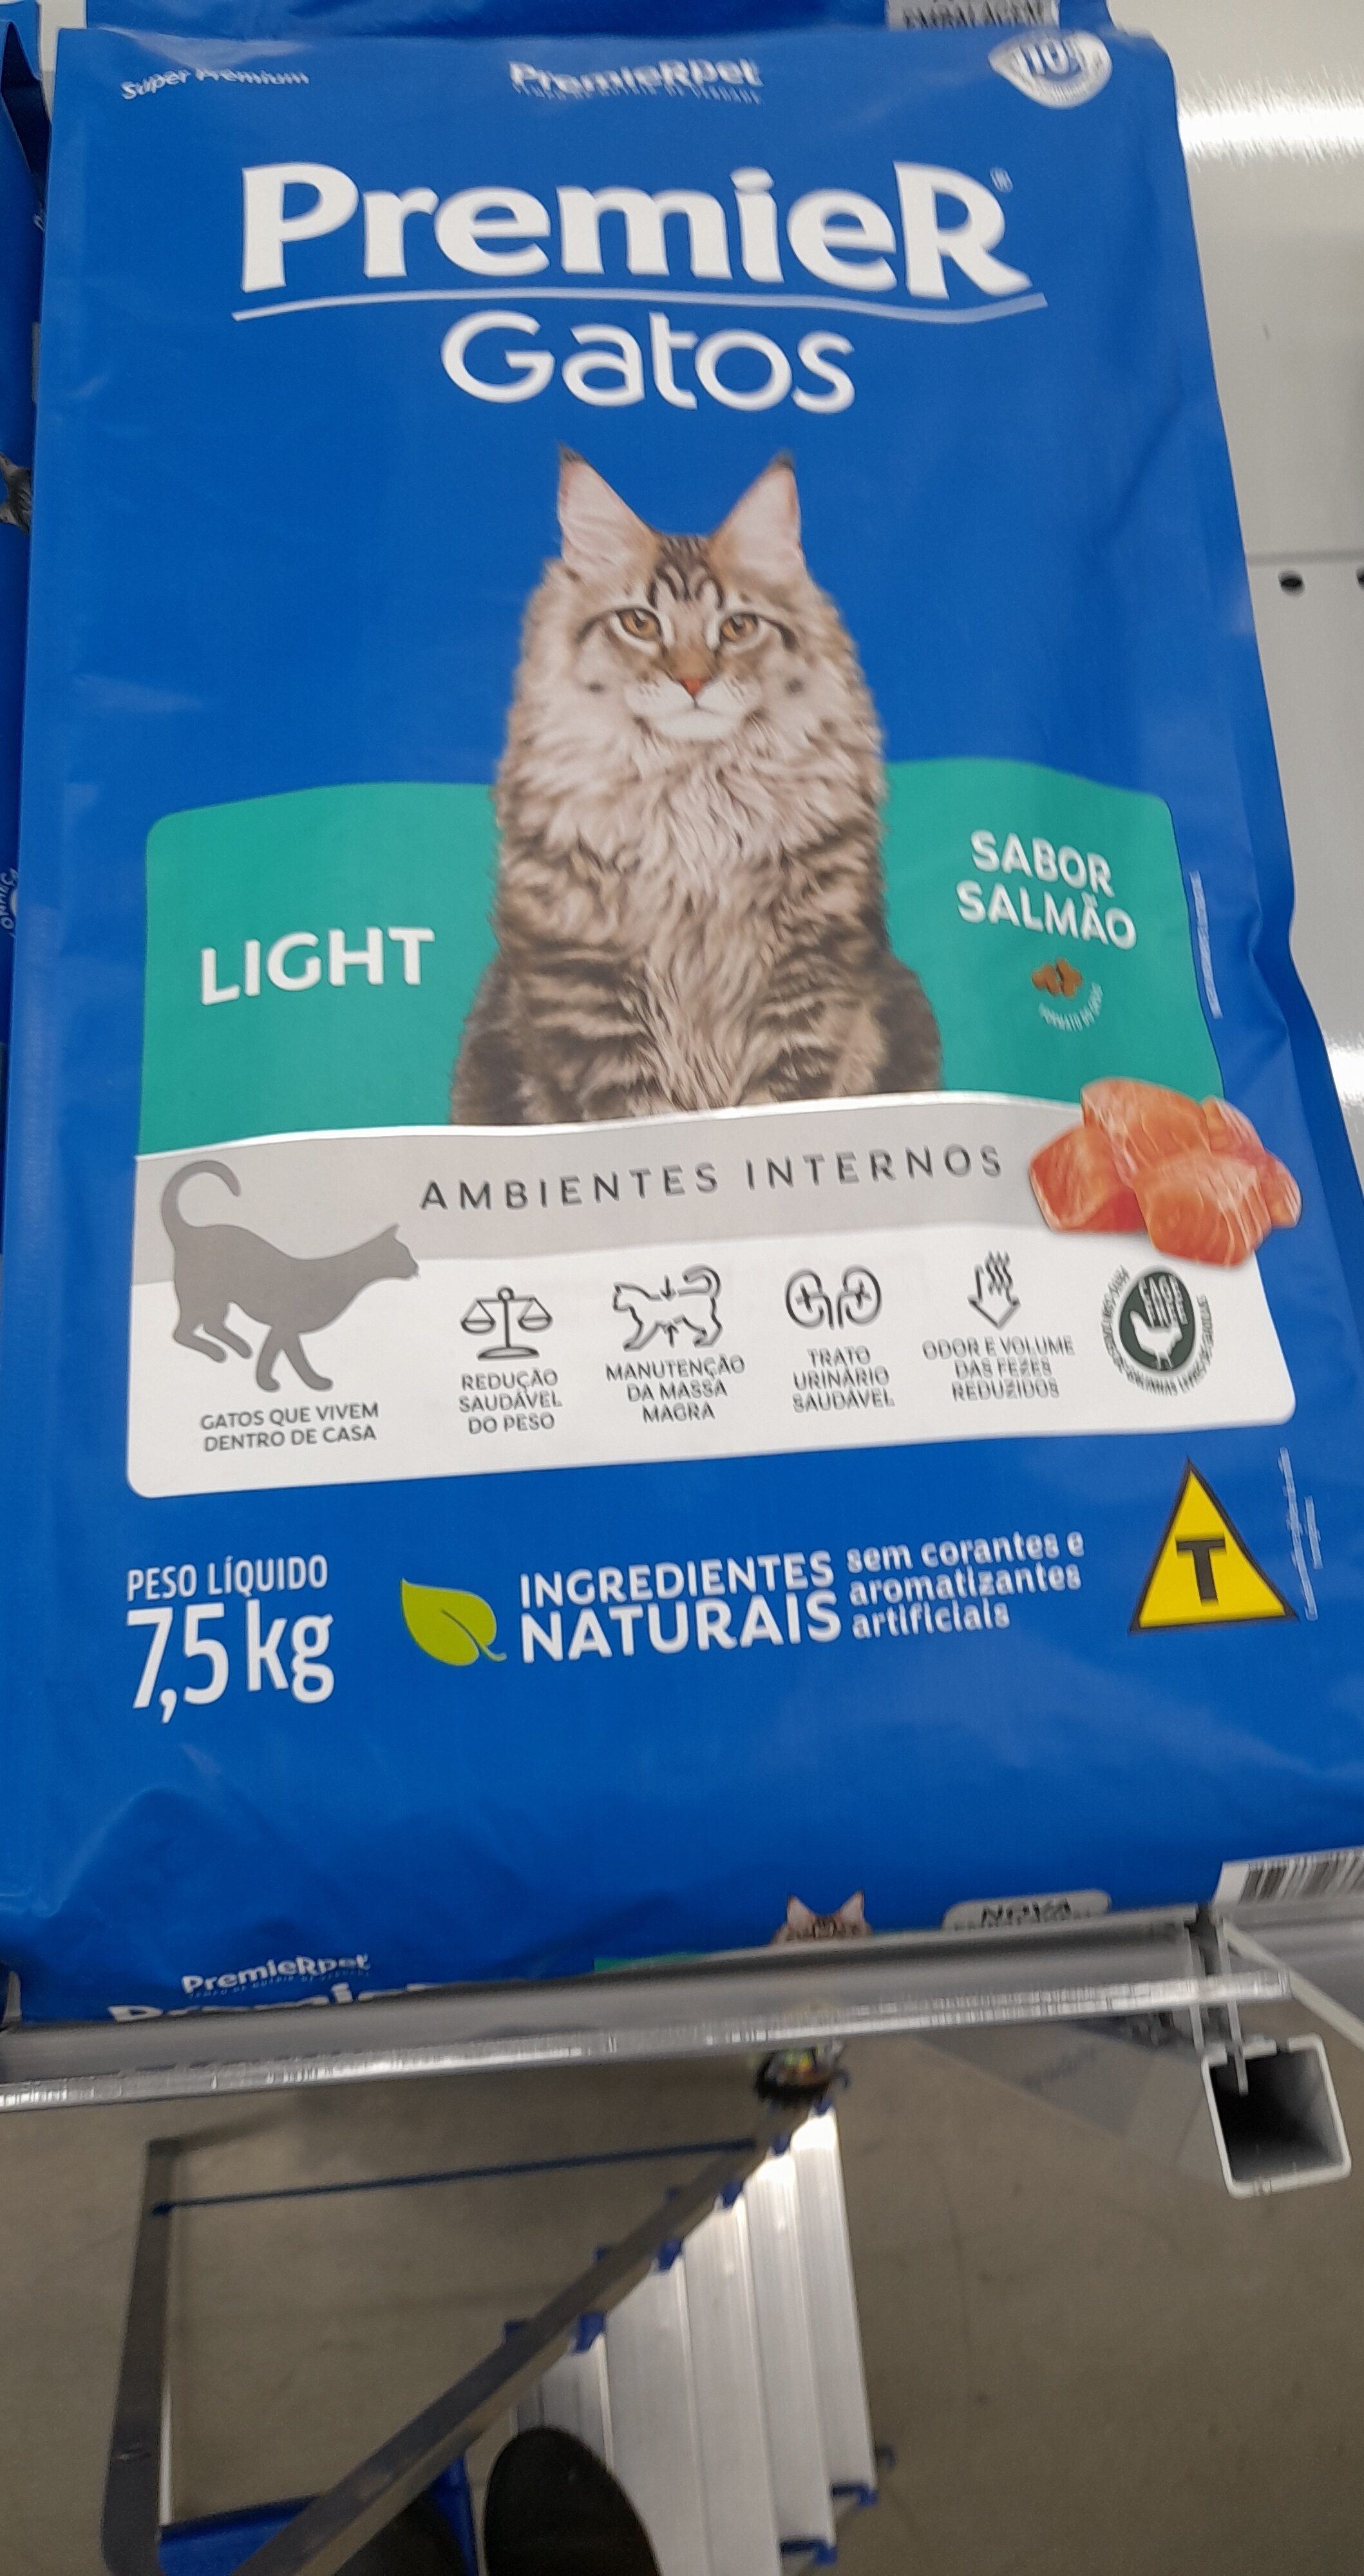 Premier gatos light - Product - pt